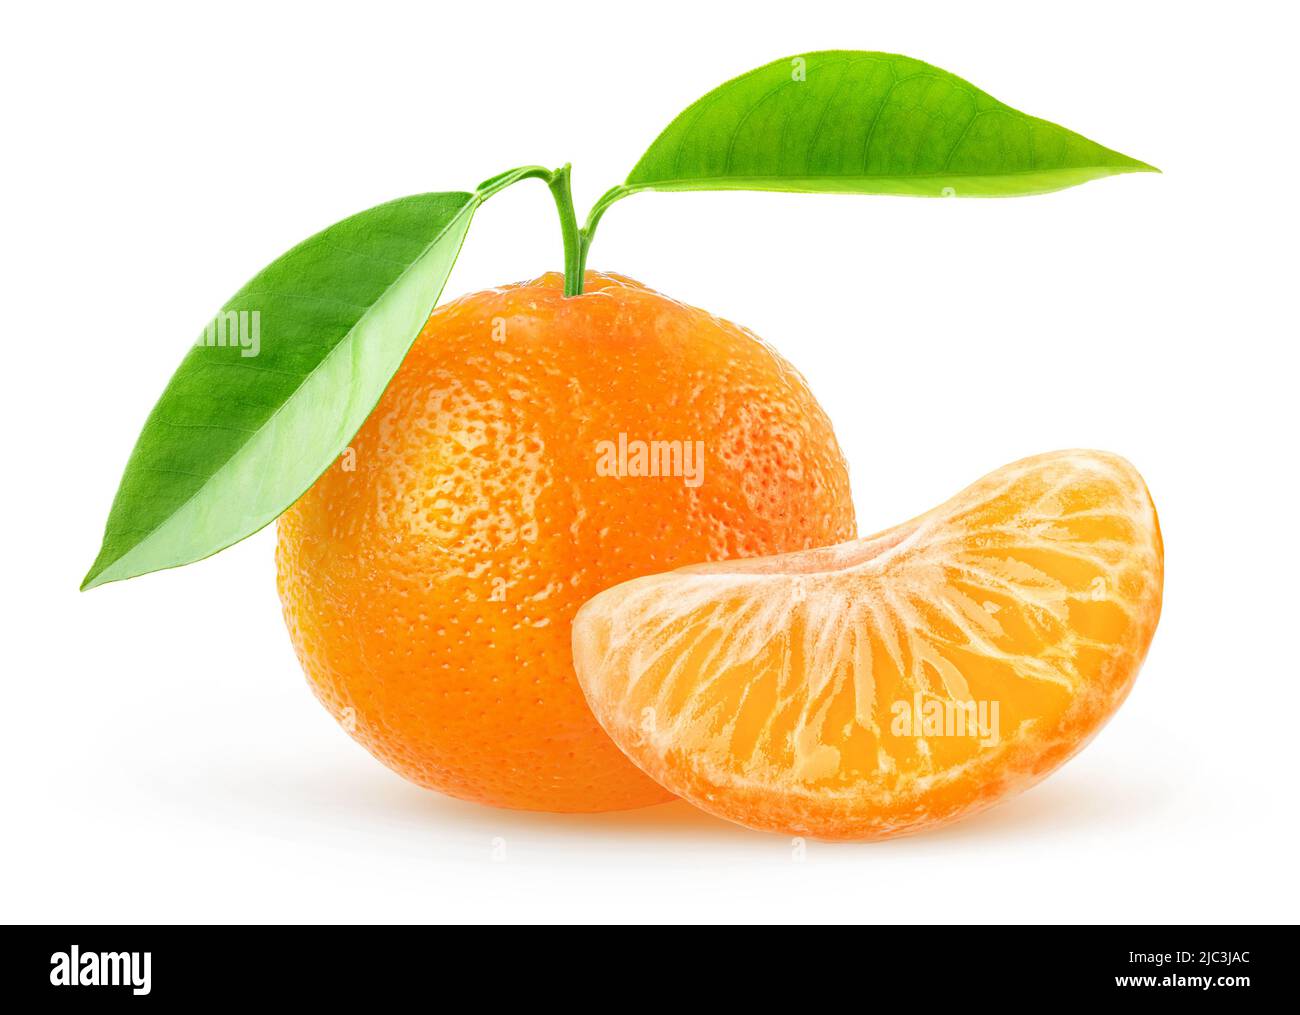 Una fruta tangerina con hojas y un segmento pelado aislado sobre fondo blanco Foto de stock